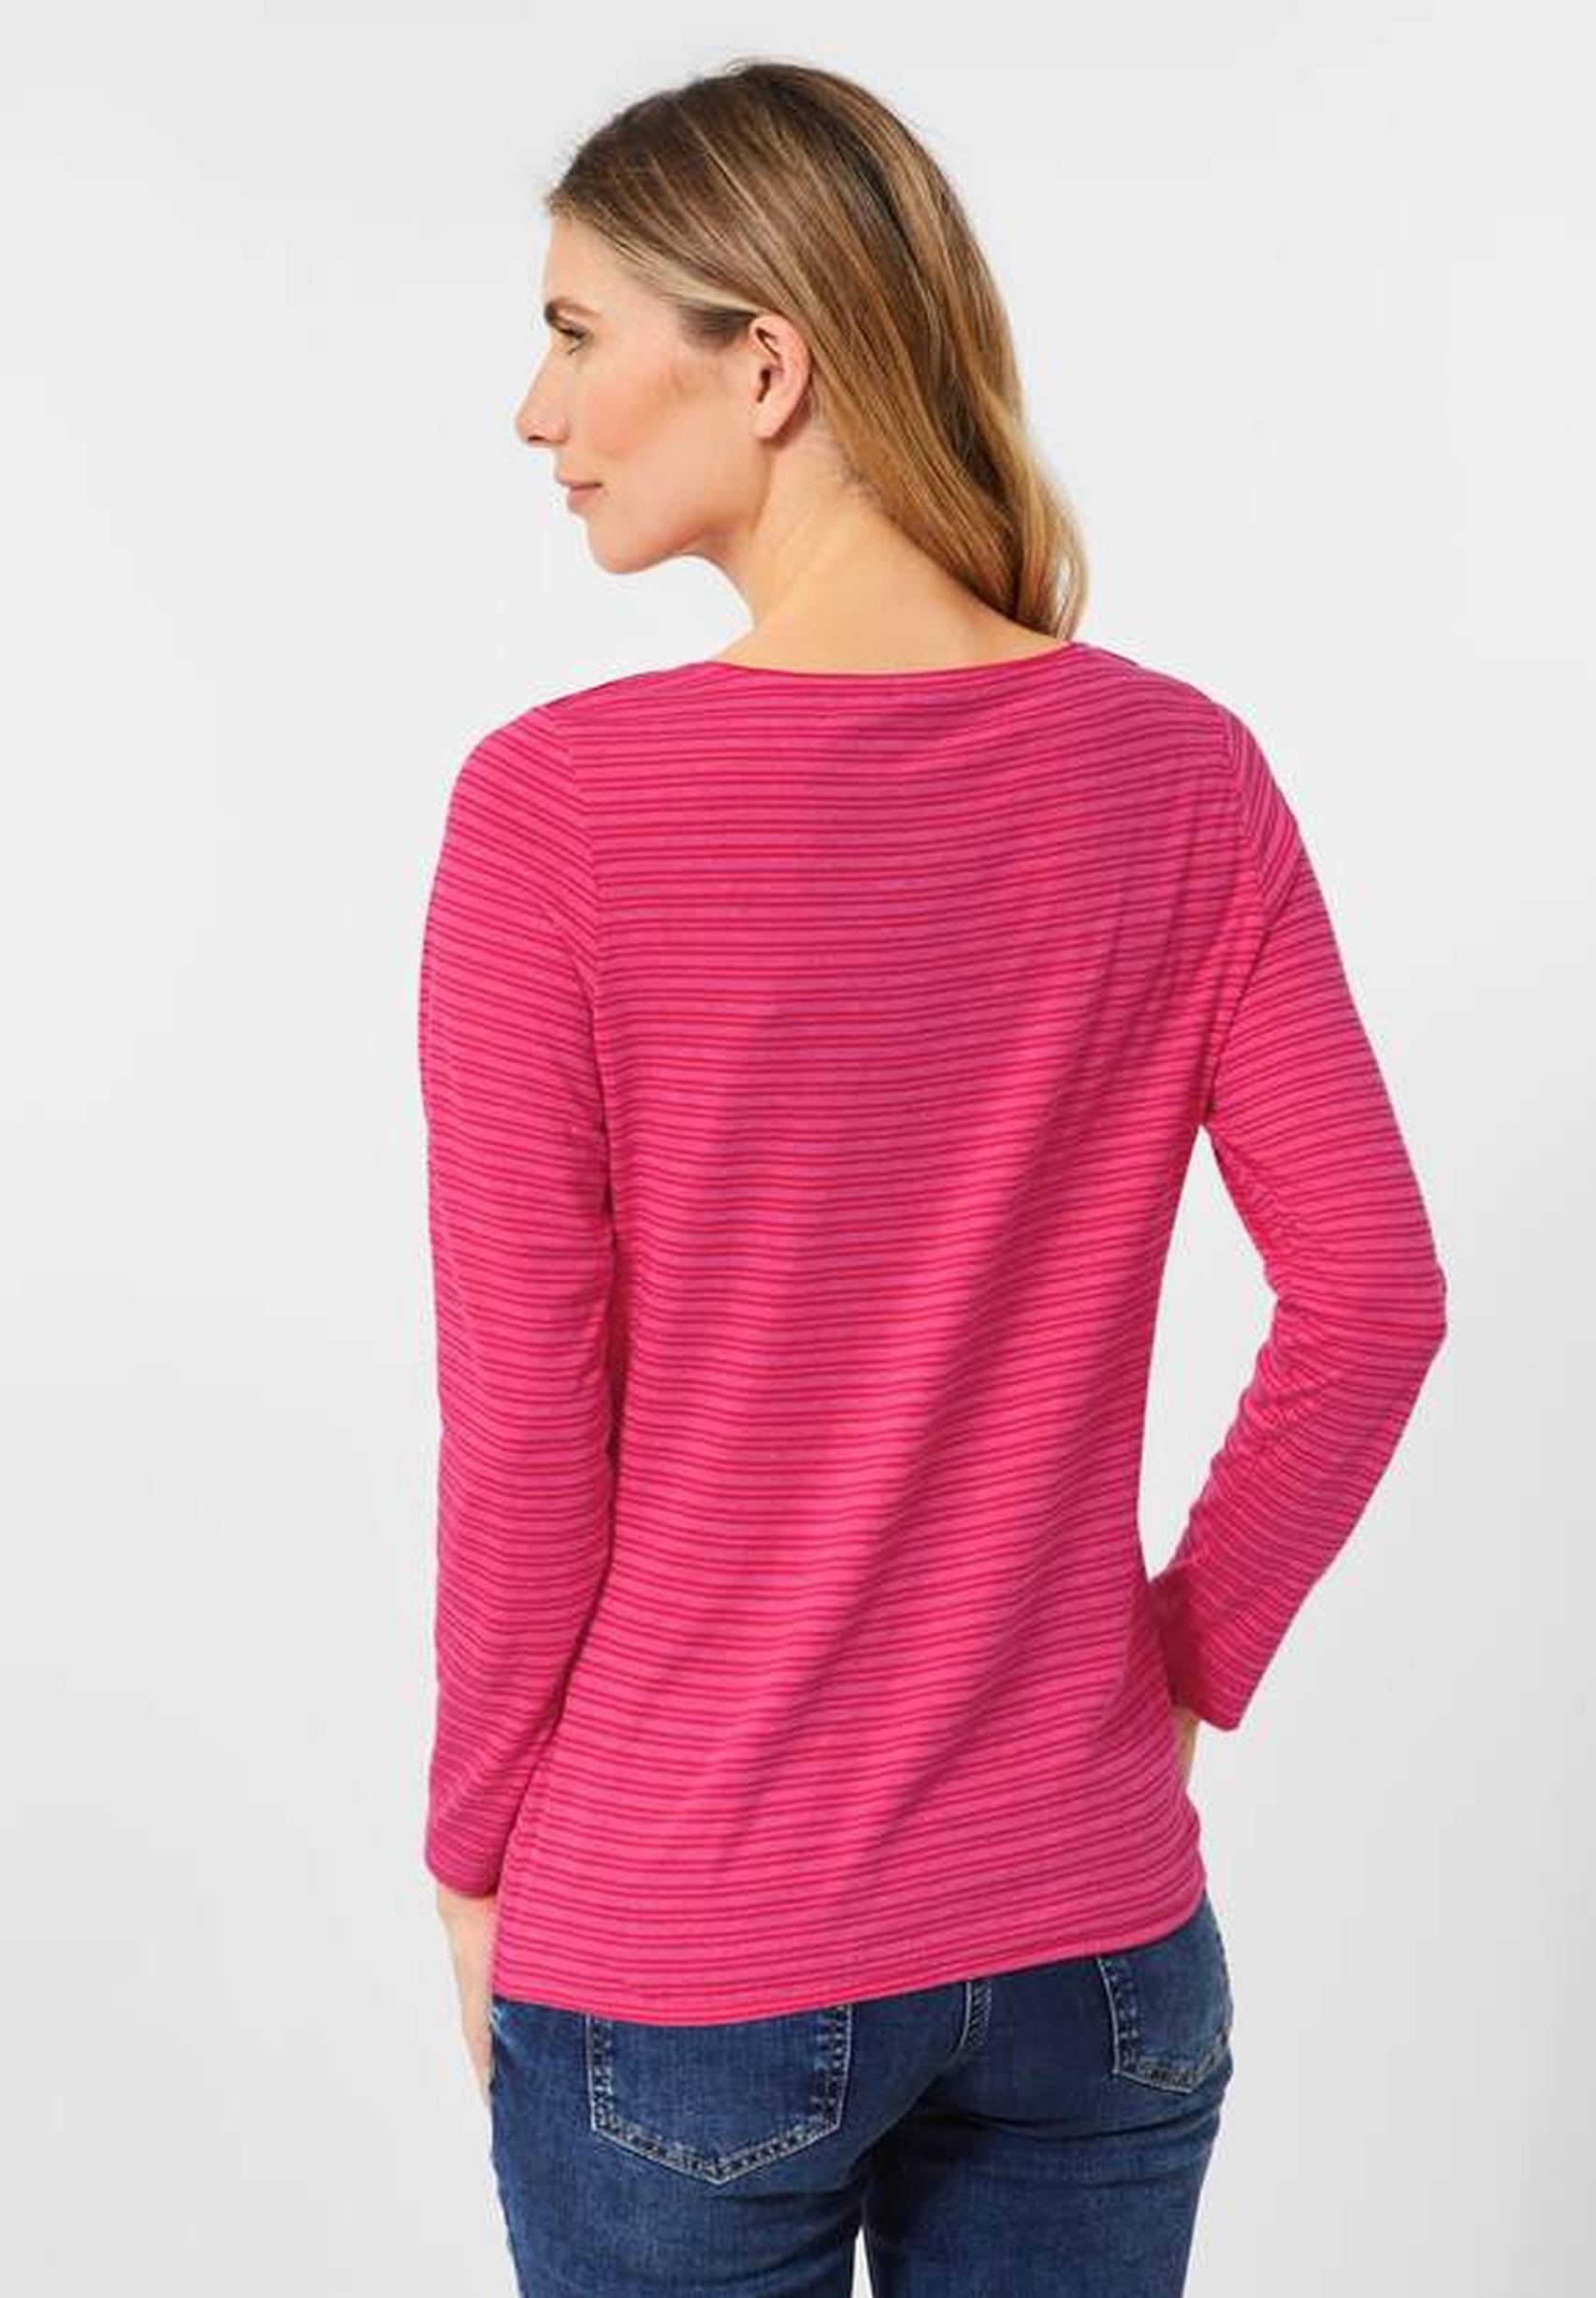 Modisches Shirt aus der Kollektion von CECIL in dynamic pink - 318613